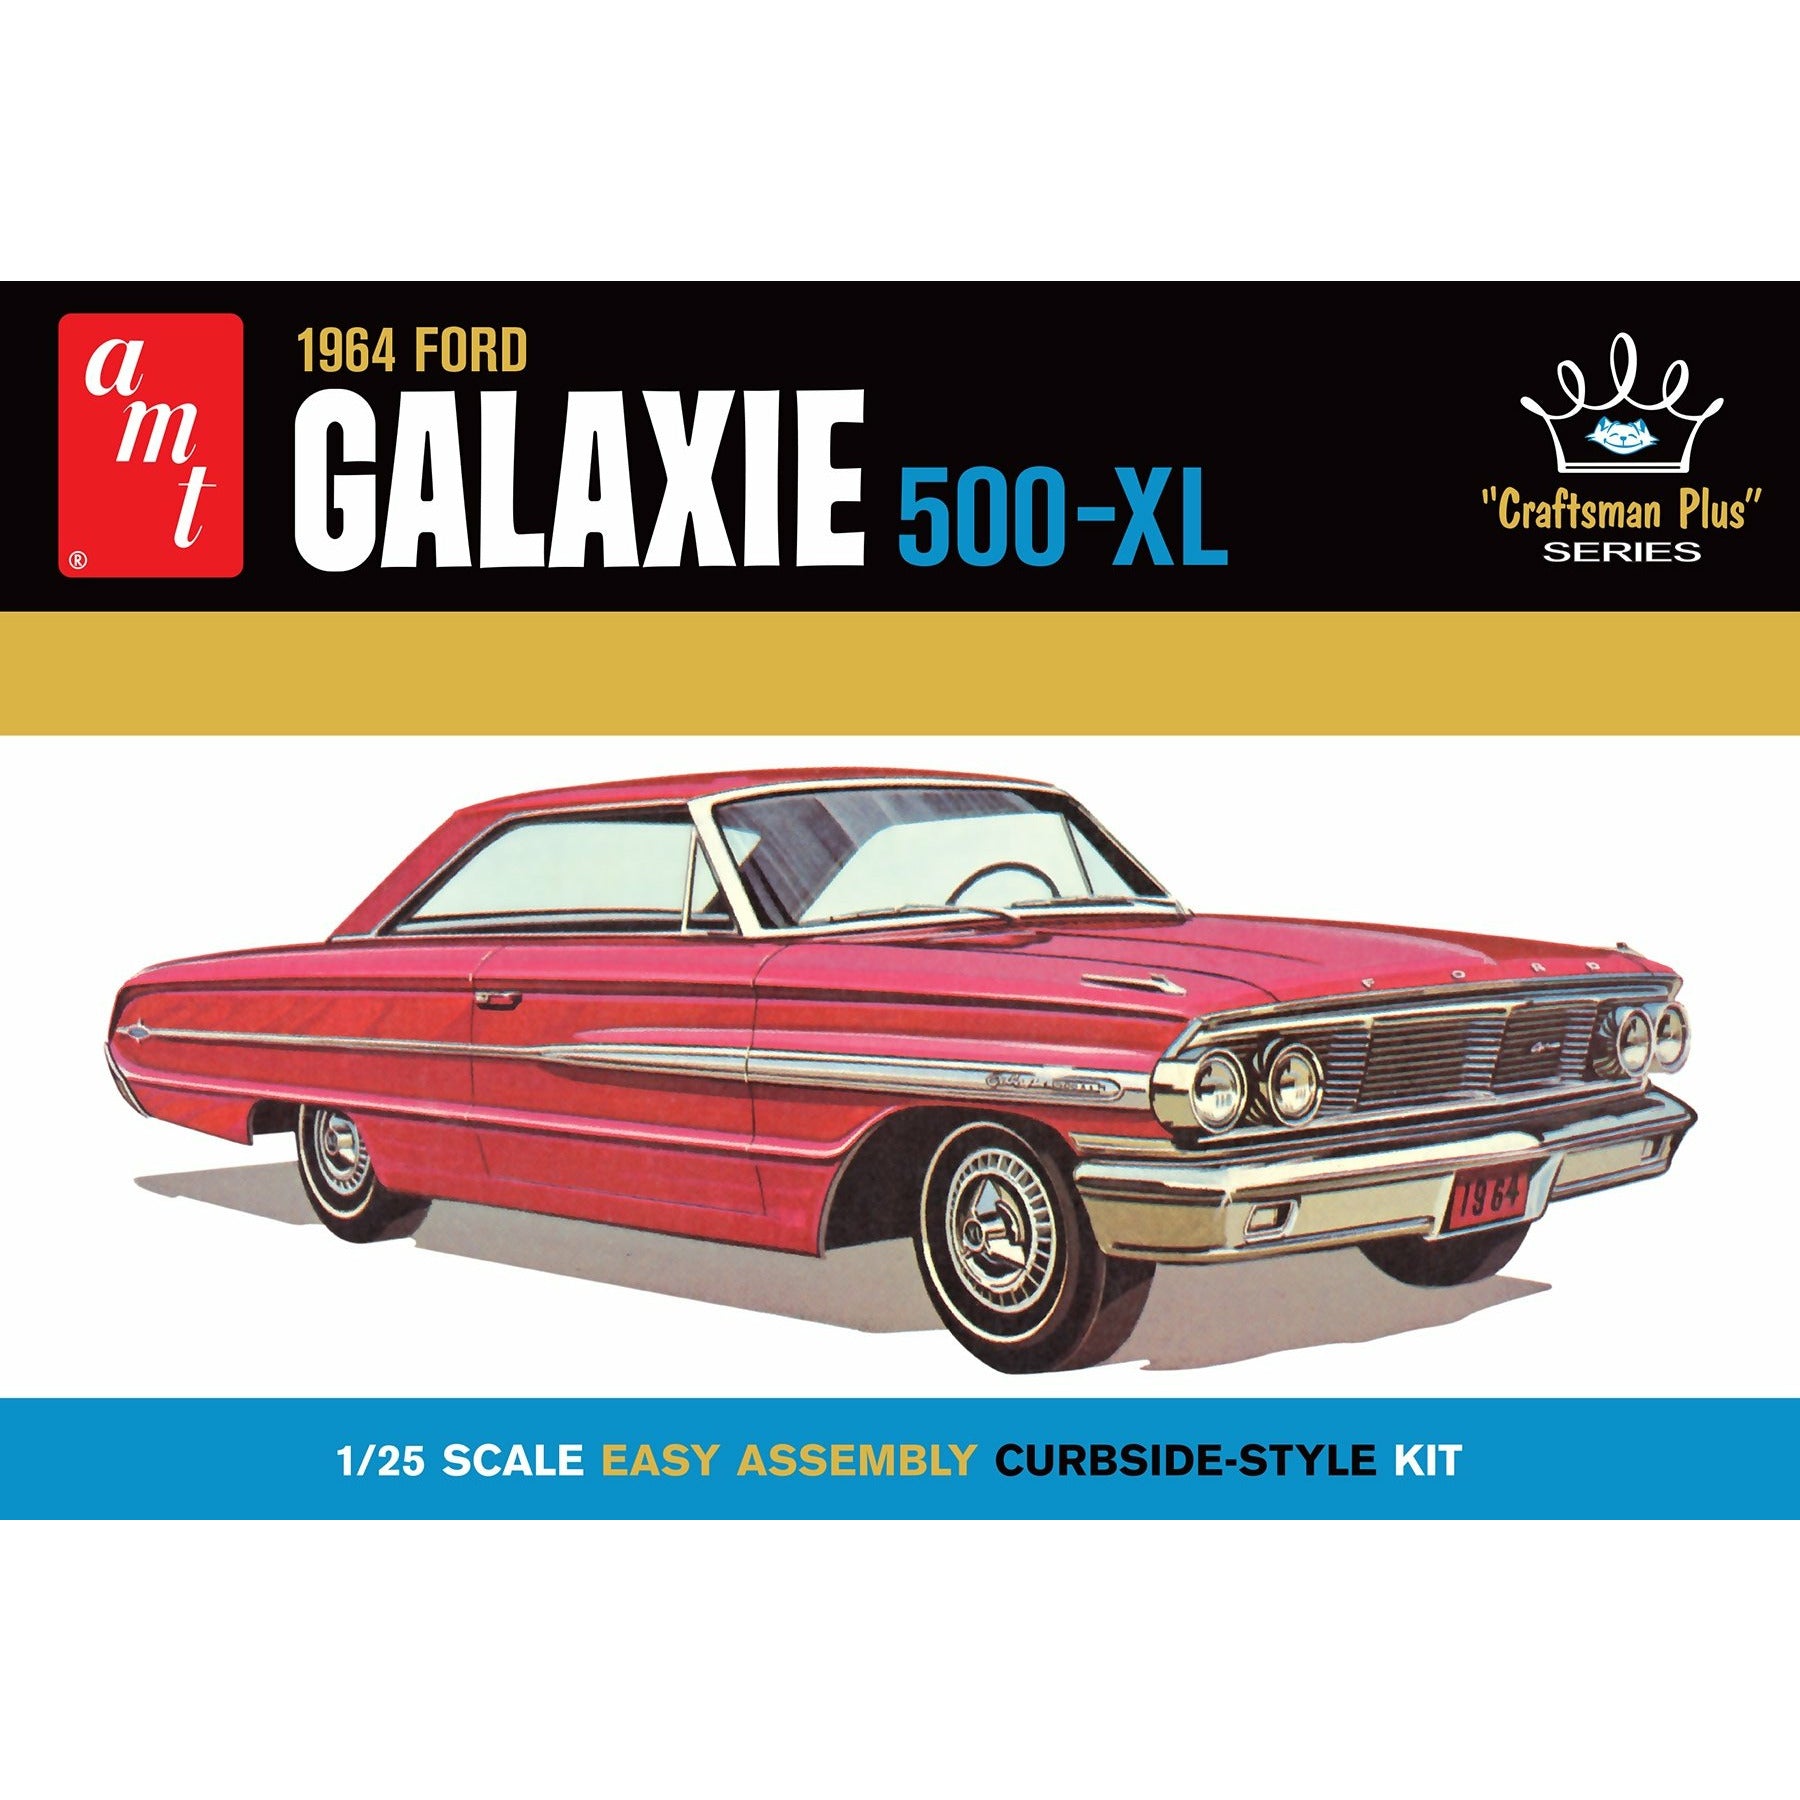 1964 Ford Galaxie 500-XL 1/25 Model Car Kit #AMT1261/12